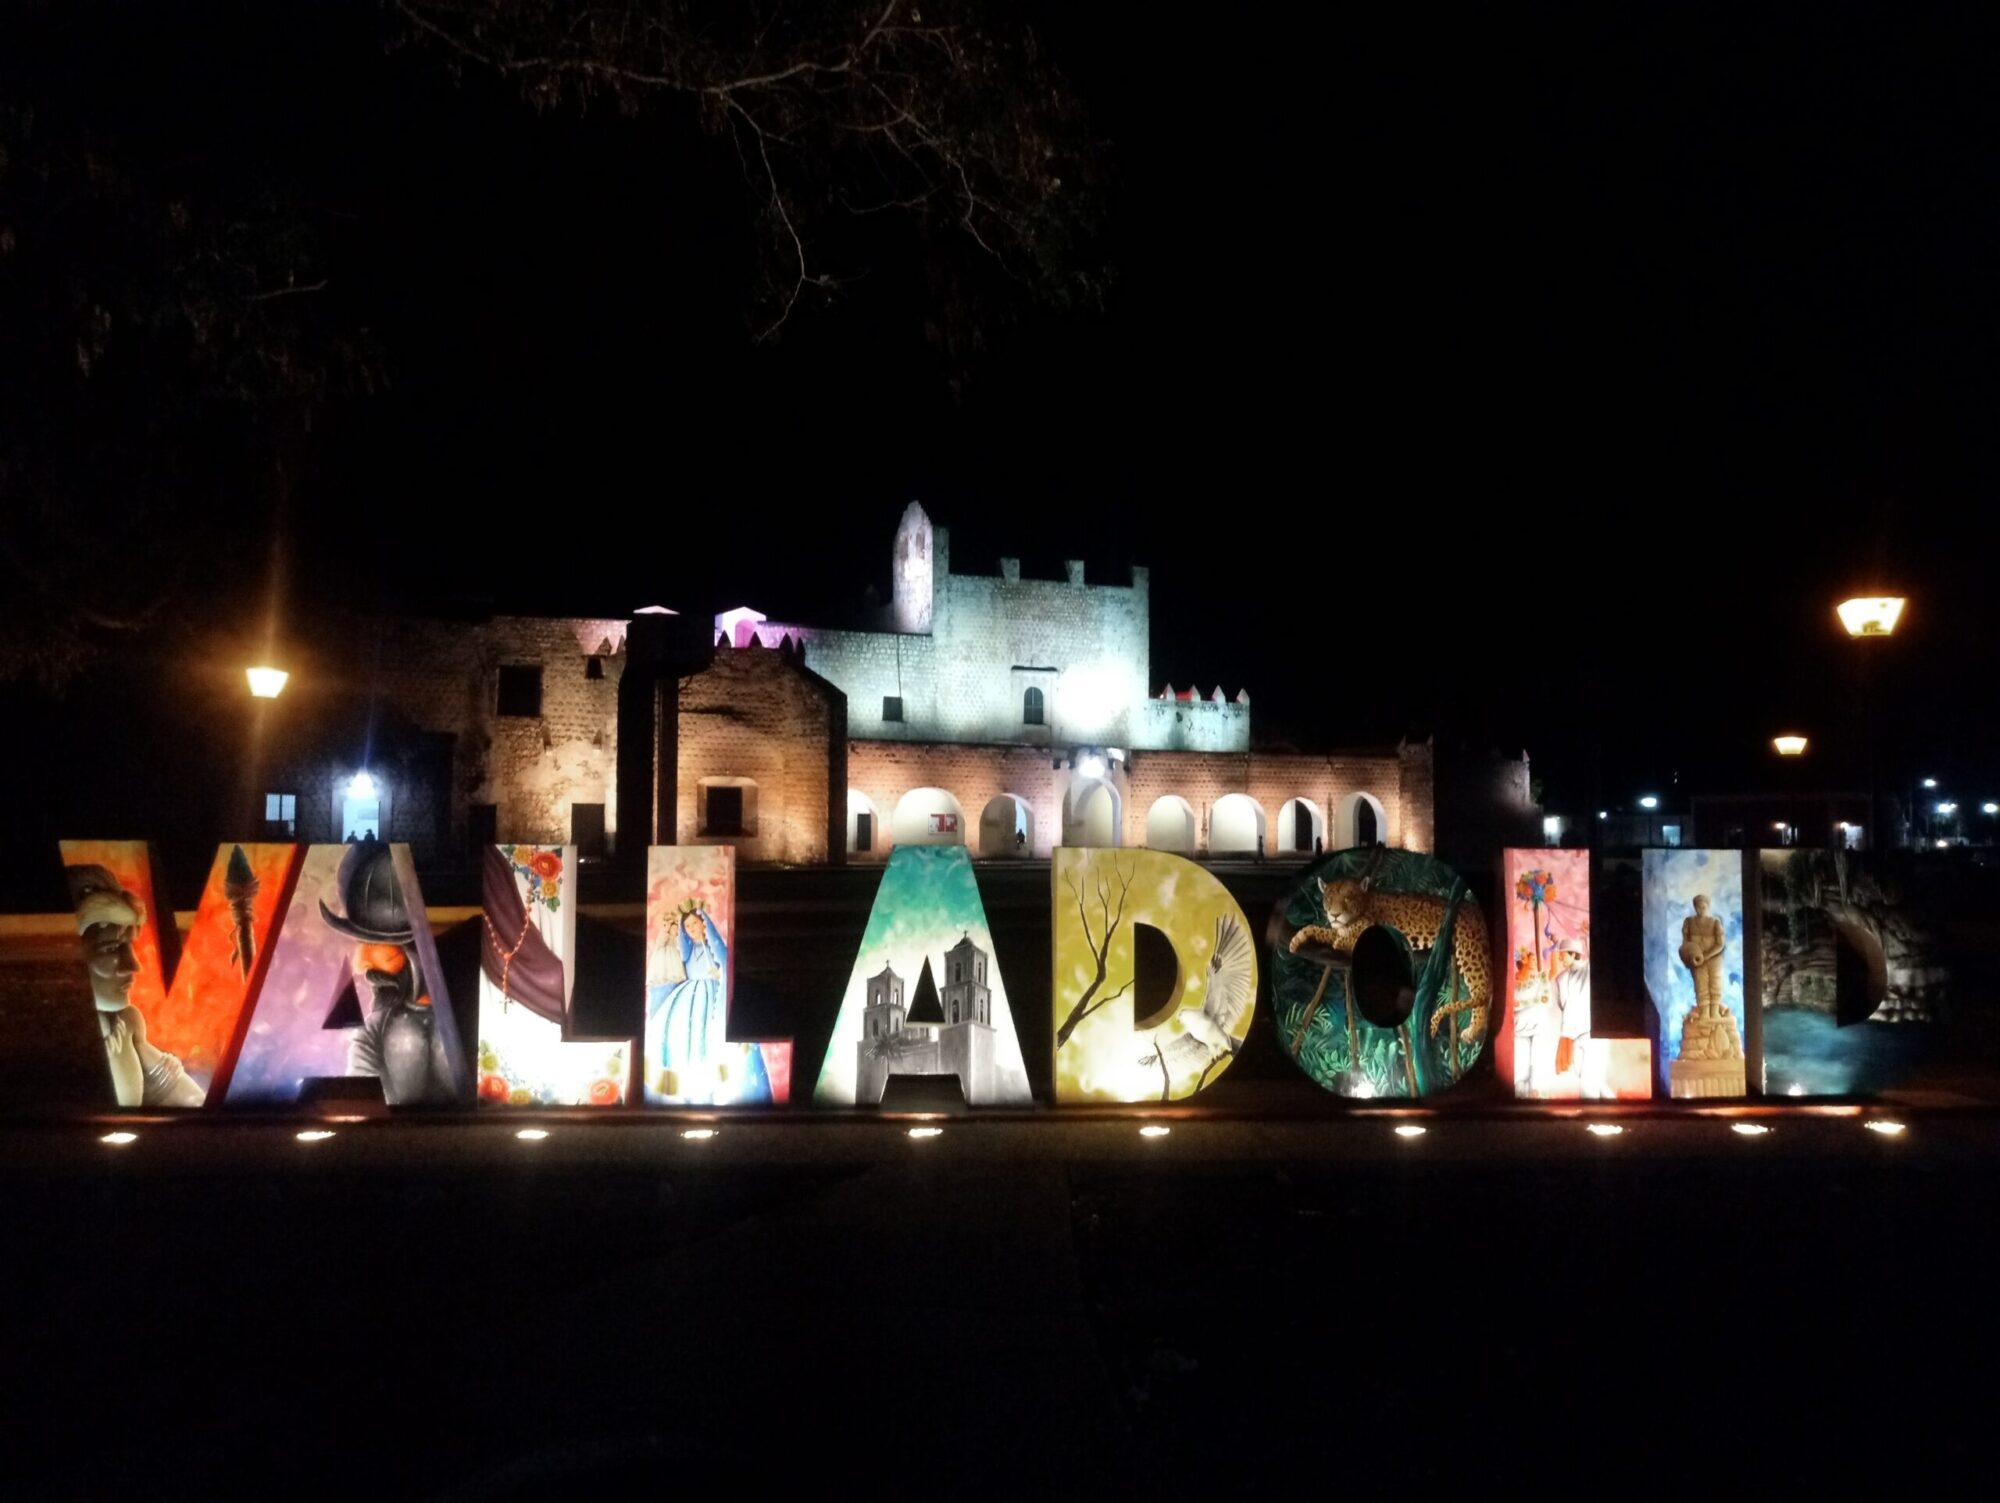 Valladolid, el pasado colonial de Yucatán.